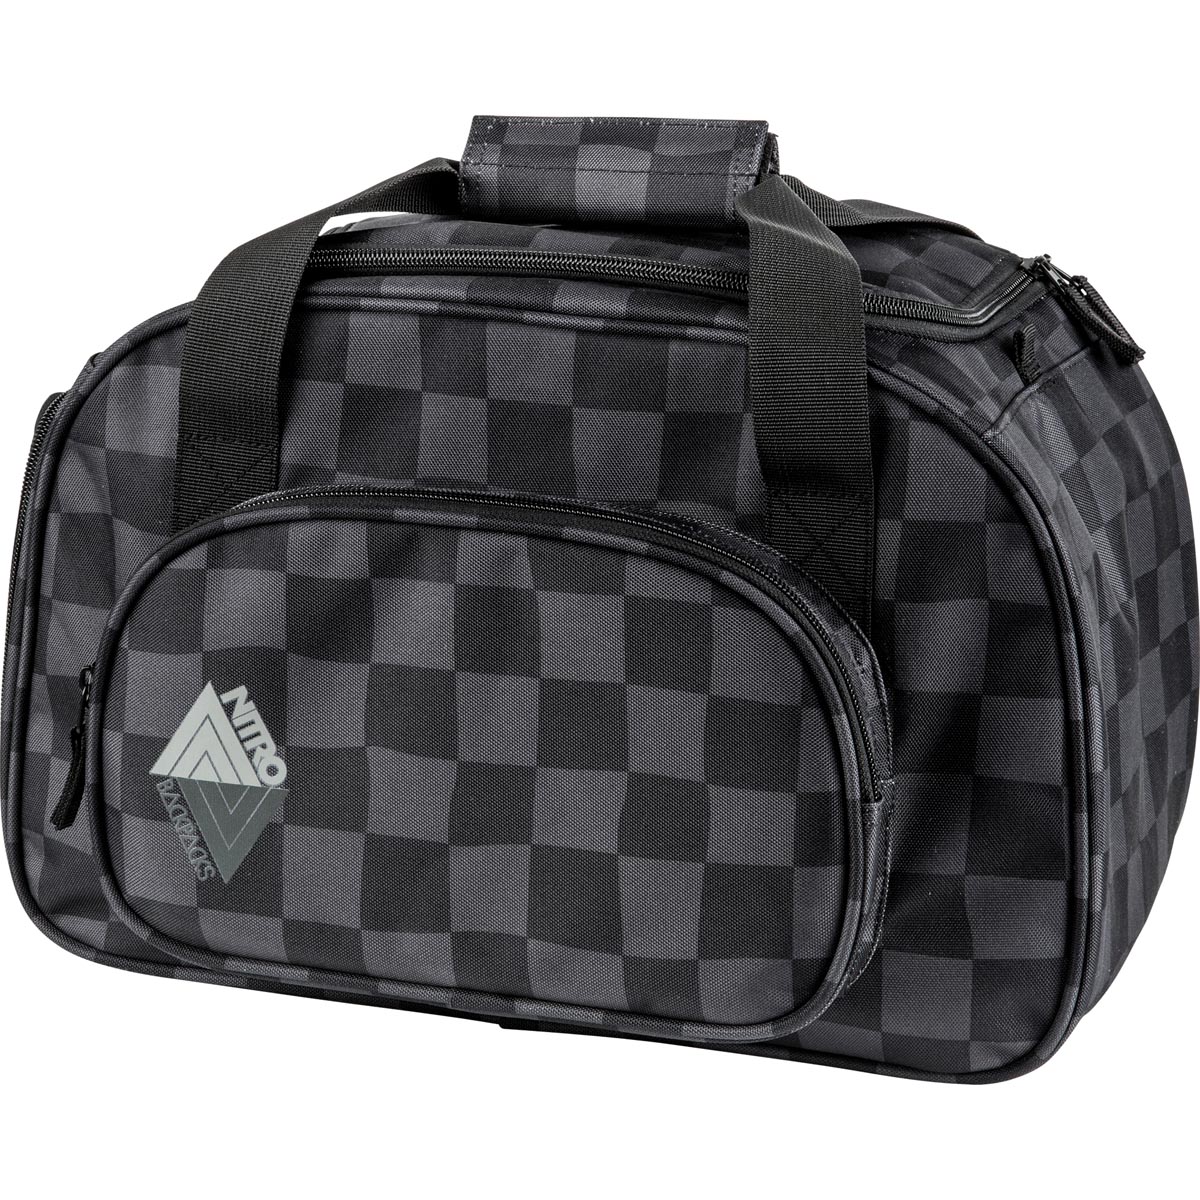 Nitro Duffle Bag XS Sporttasche Black Checker 35 L | Duffle Bag XS | Reise & Sporttaschen ...